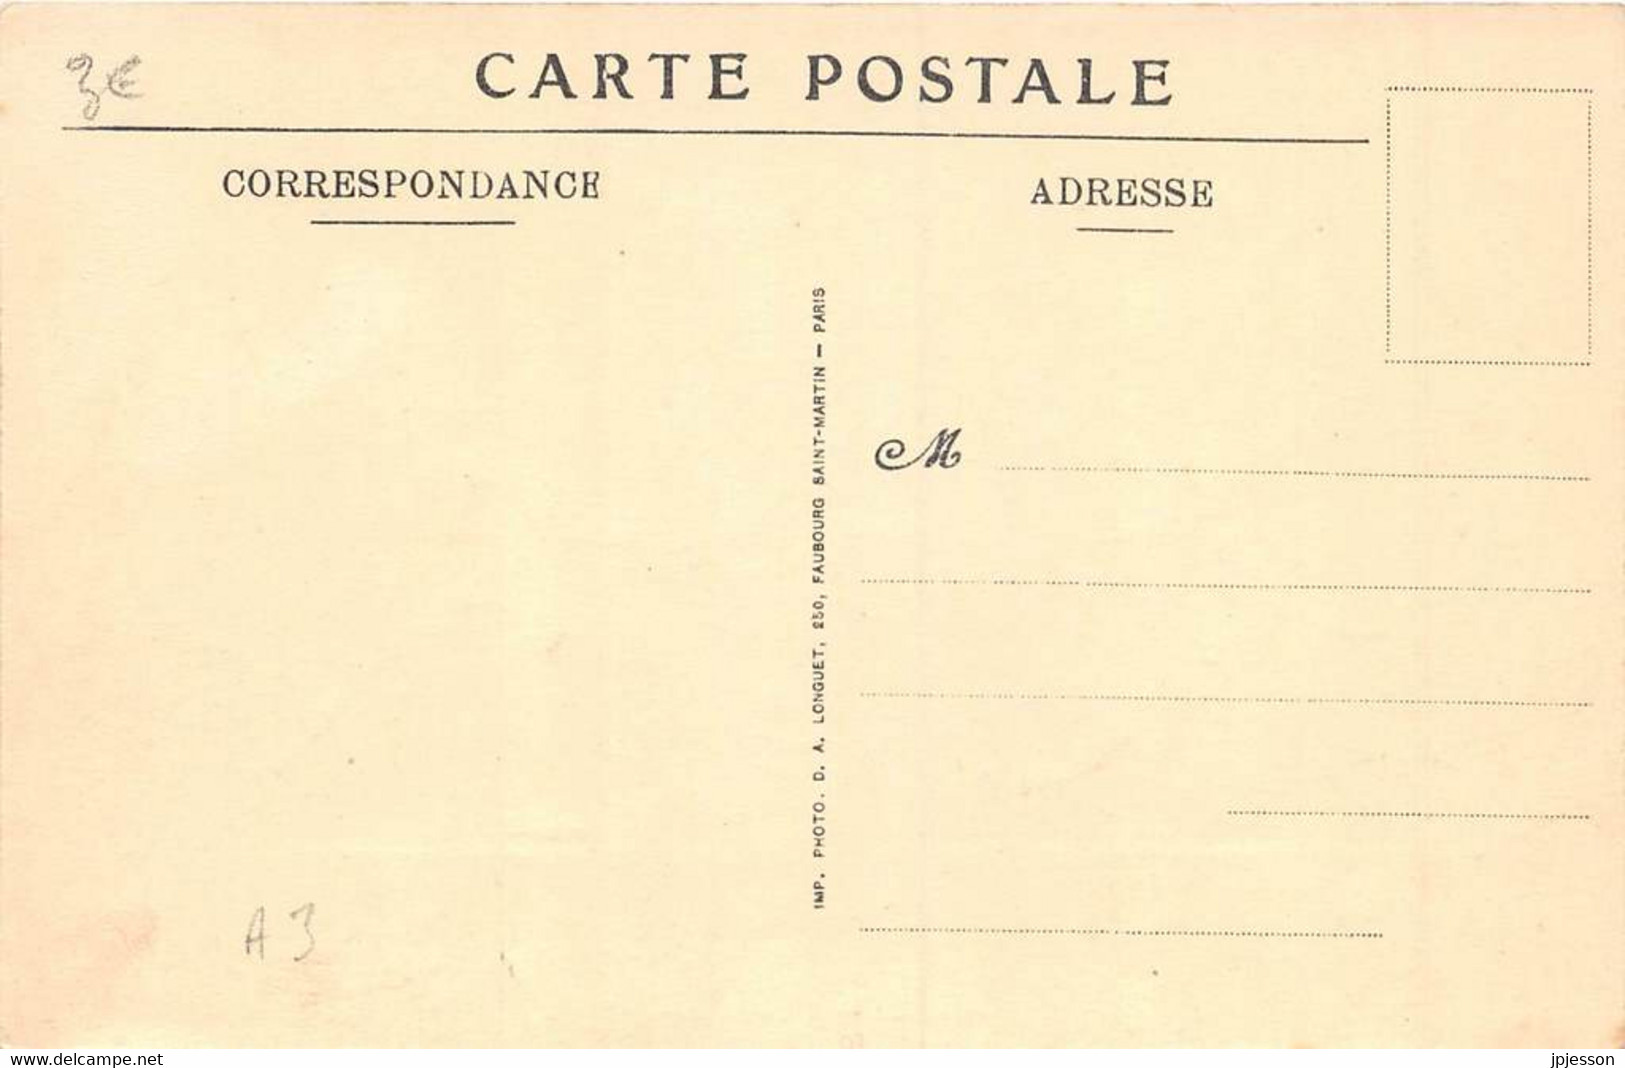 NORD 59  AUBY - FOSSE N°8 DES MINES DE L'ESCARPELLE ( PORT ARTHUR ) - "NOS REGIONS DEVASTEES" - GUERRE 18 18 - Auby